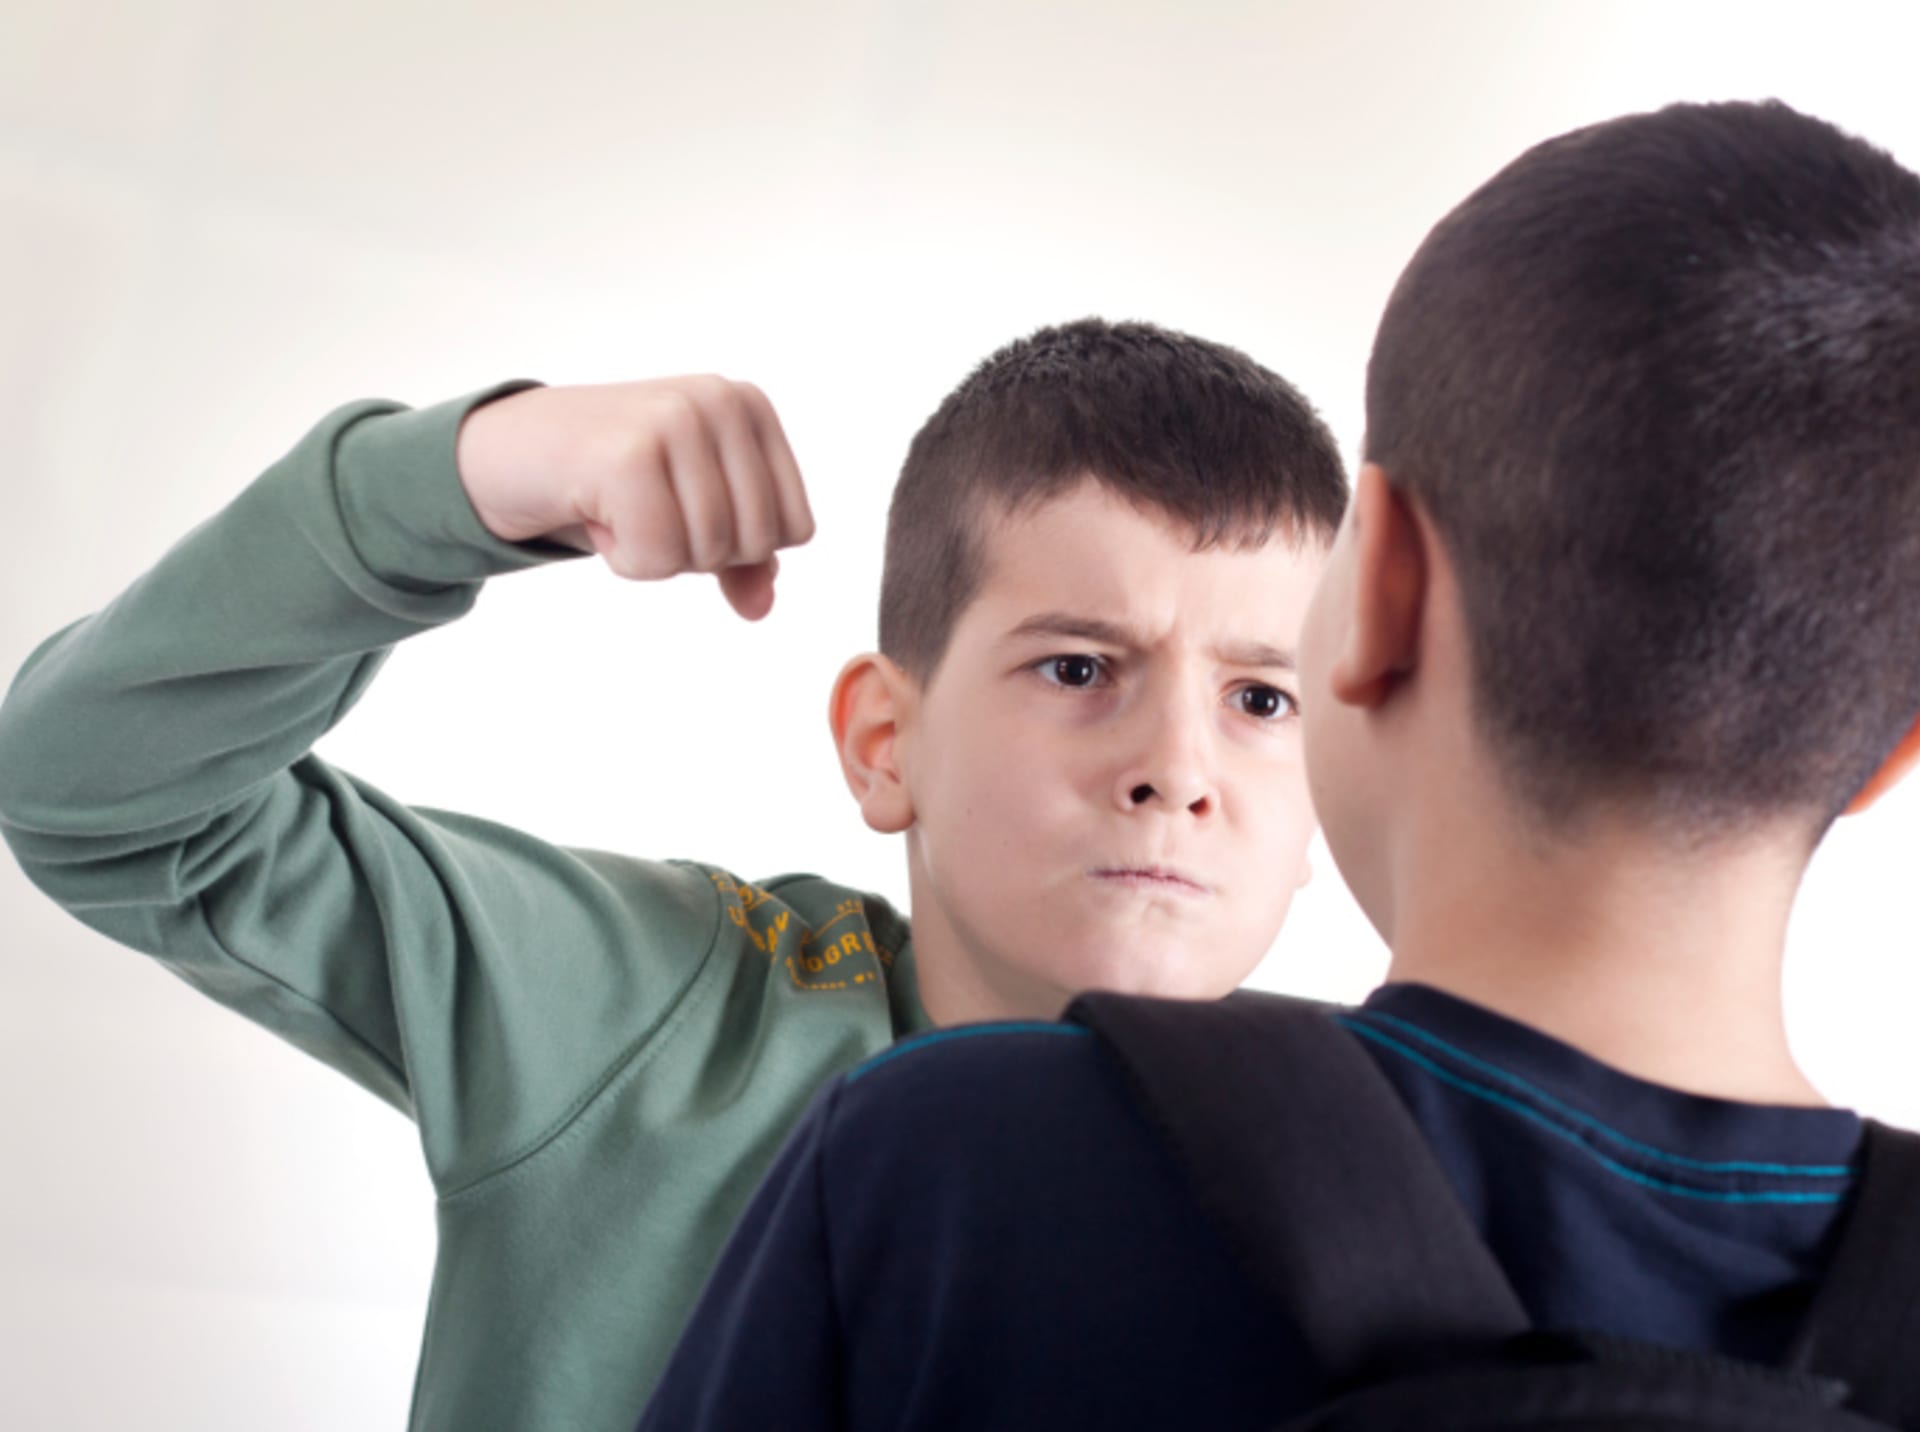 Dětská agrese může mít mnoho forem i důvodů